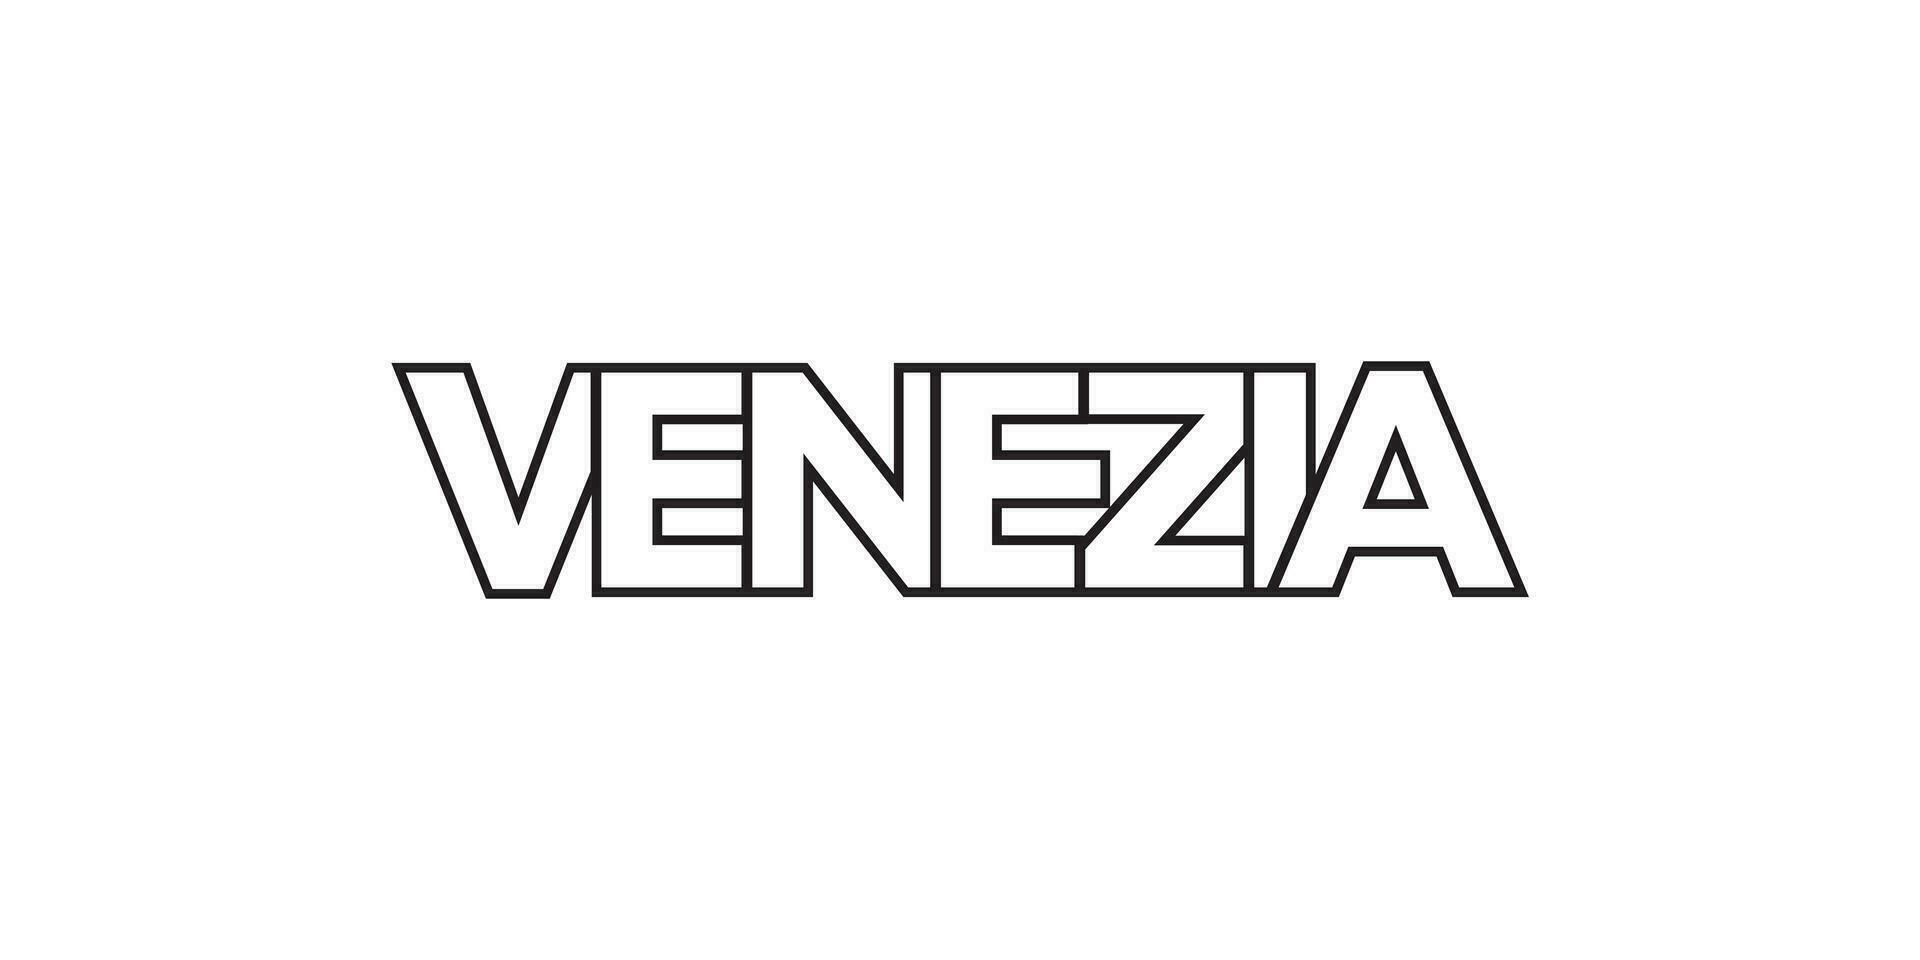 venezia en el italia emblema. el diseño caracteristicas un geométrico estilo, vector ilustración con negrita tipografía en un moderno fuente. el gráfico eslogan letras.